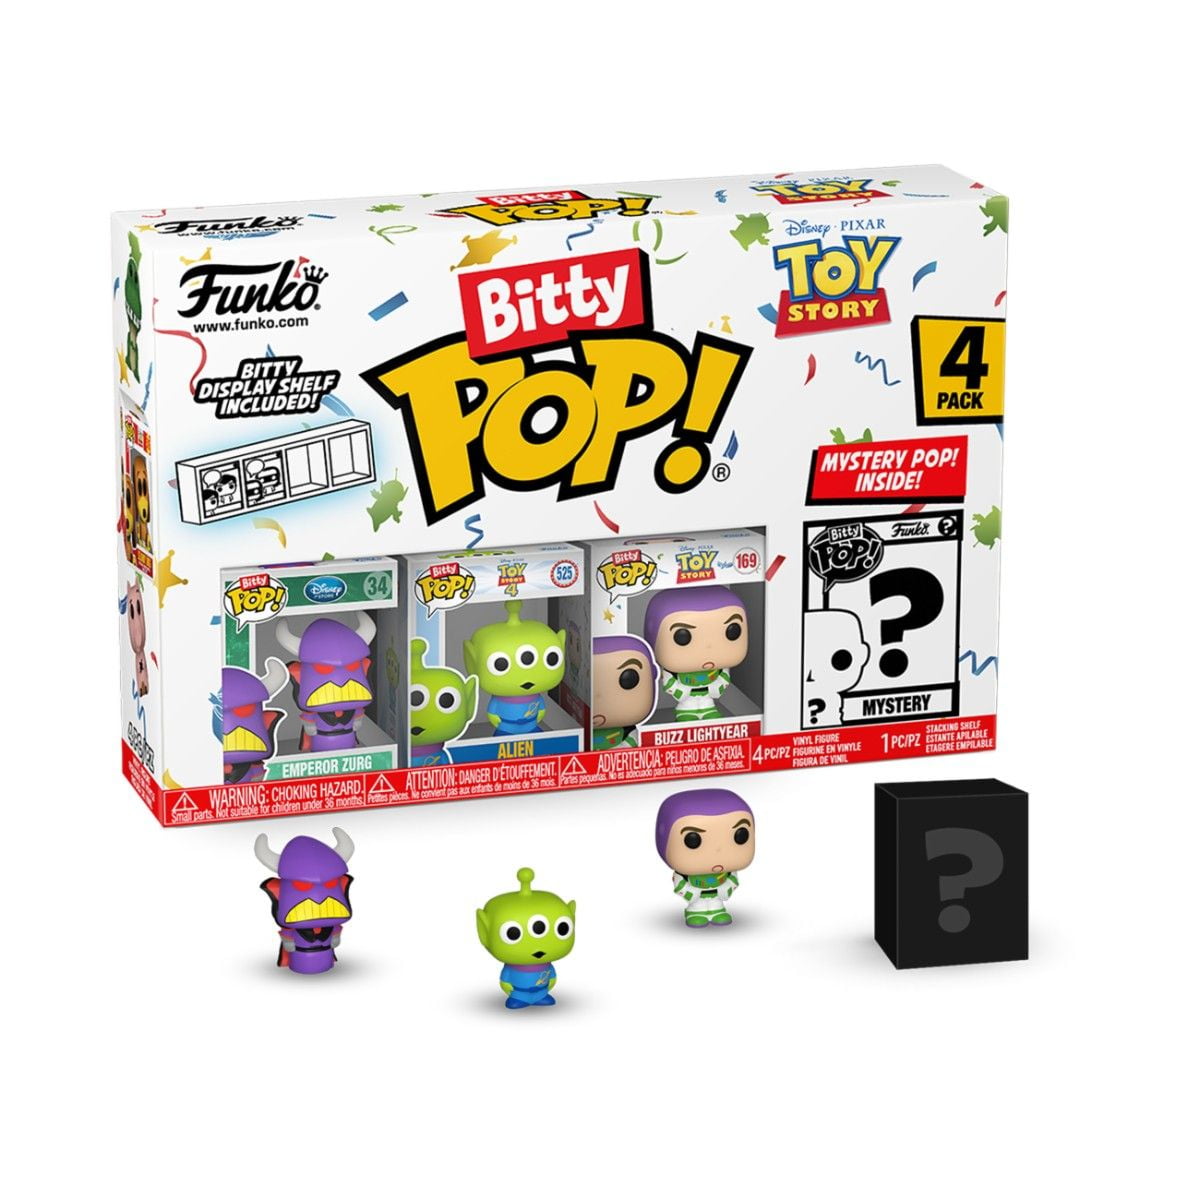 Toy Story - Zurg 4PK Bitty POP!